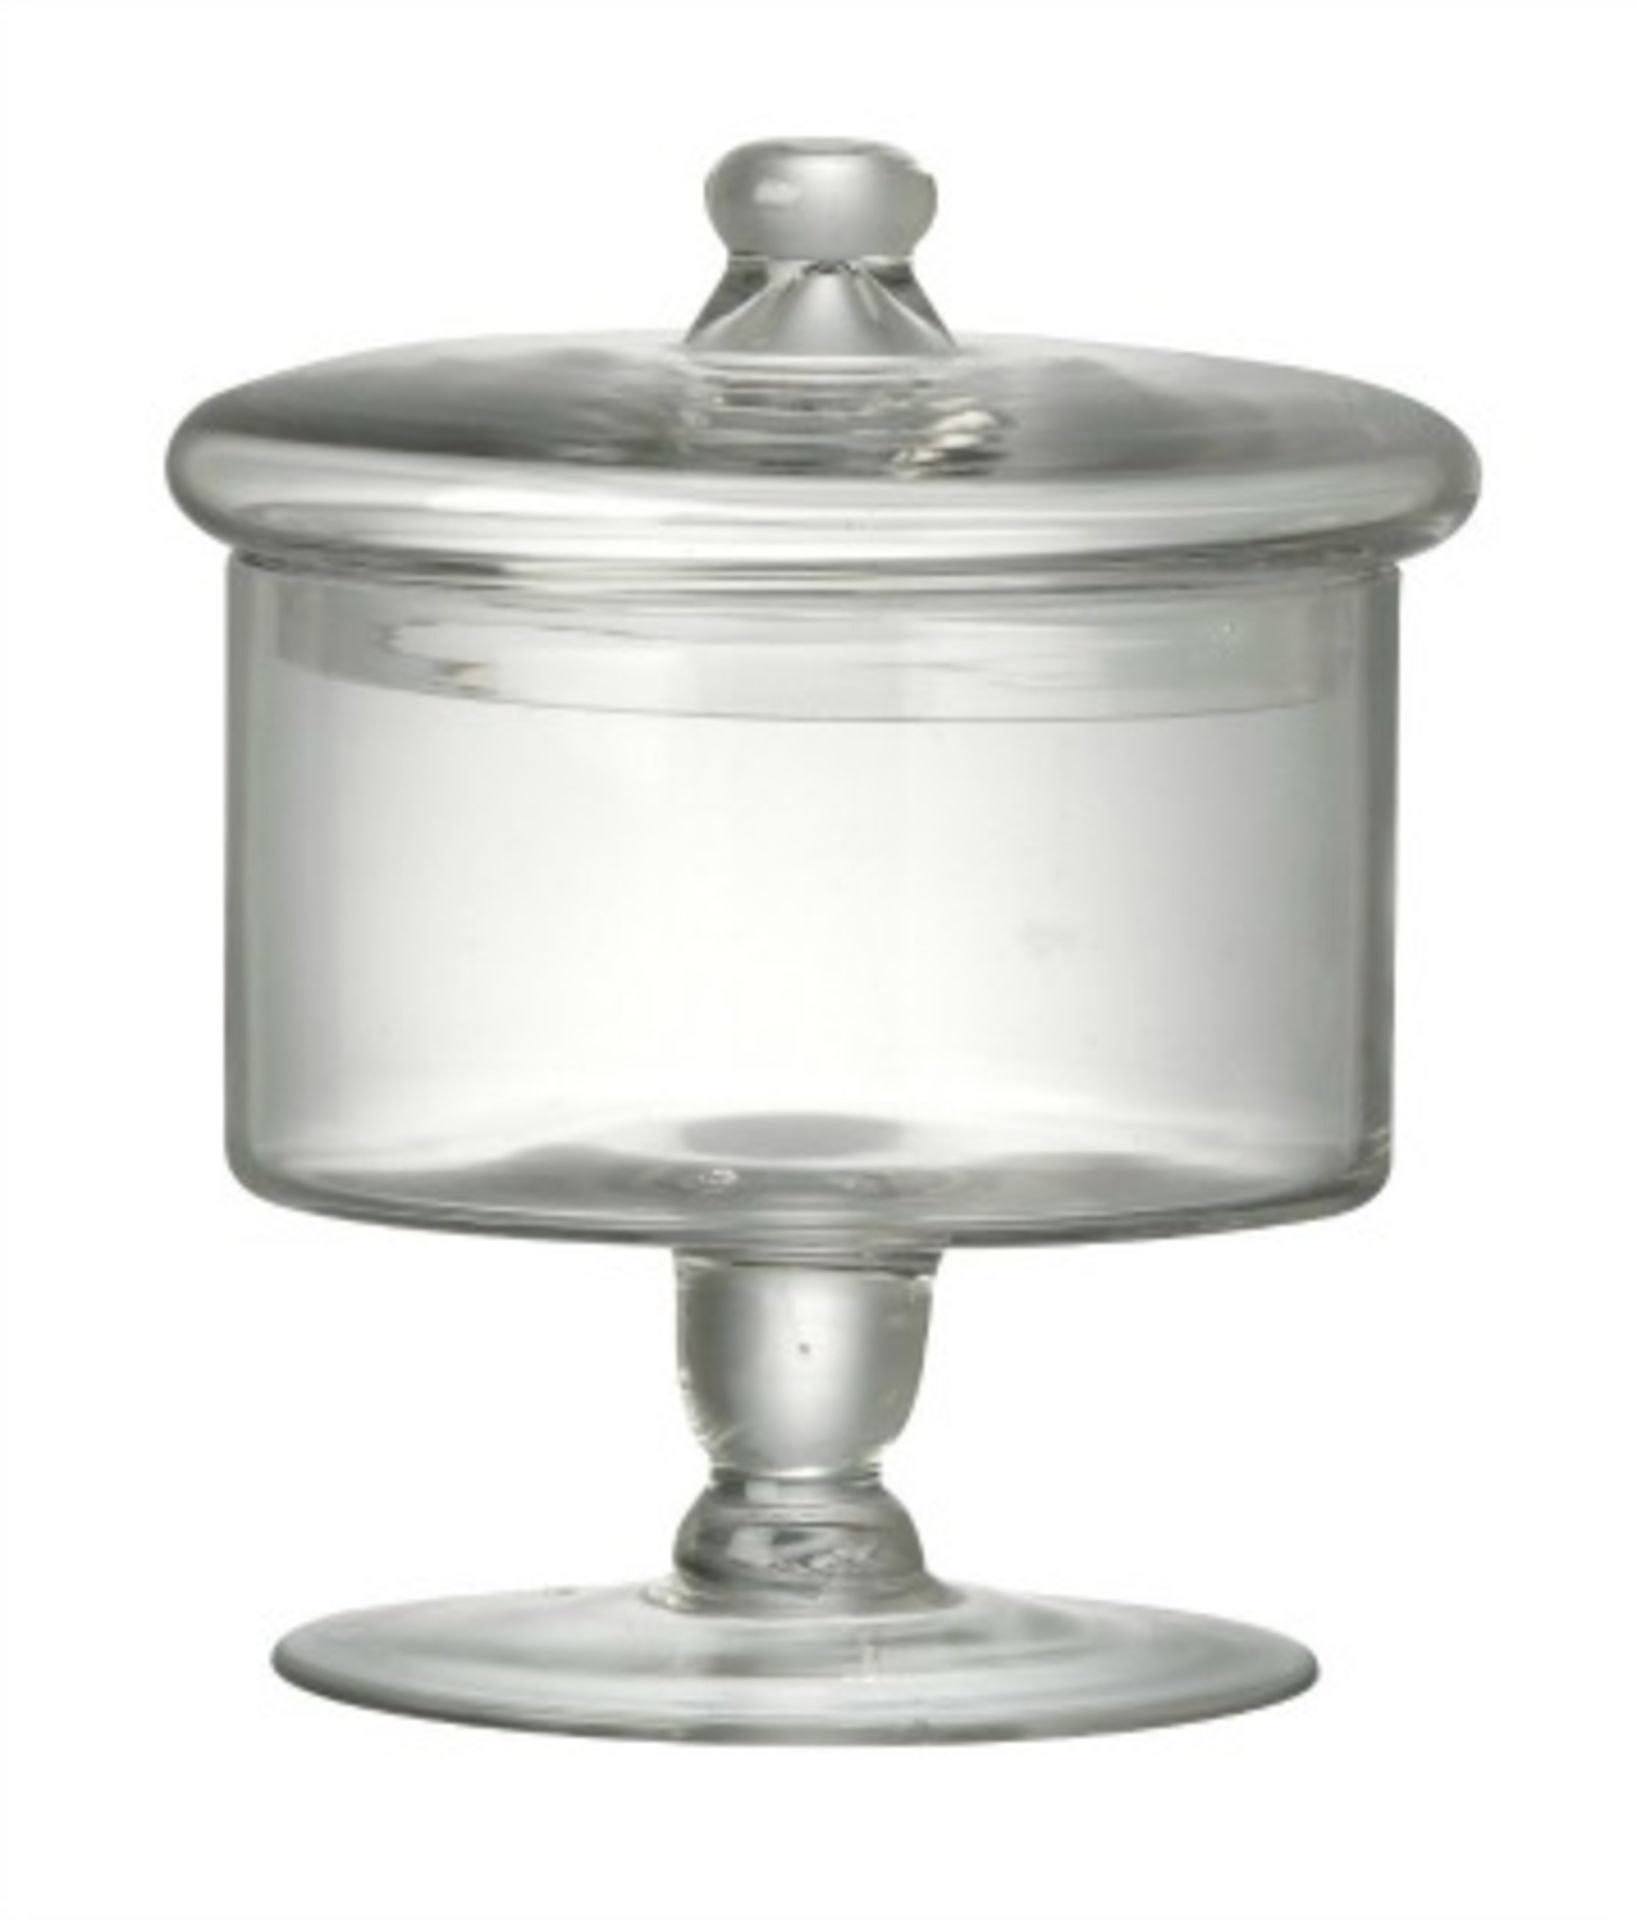 8 X GLASS SWEETIE JAR, SOAP DISH, ICE/BOTTLE BUCKET, GLASSWEAR, ETC. RRP £174.85